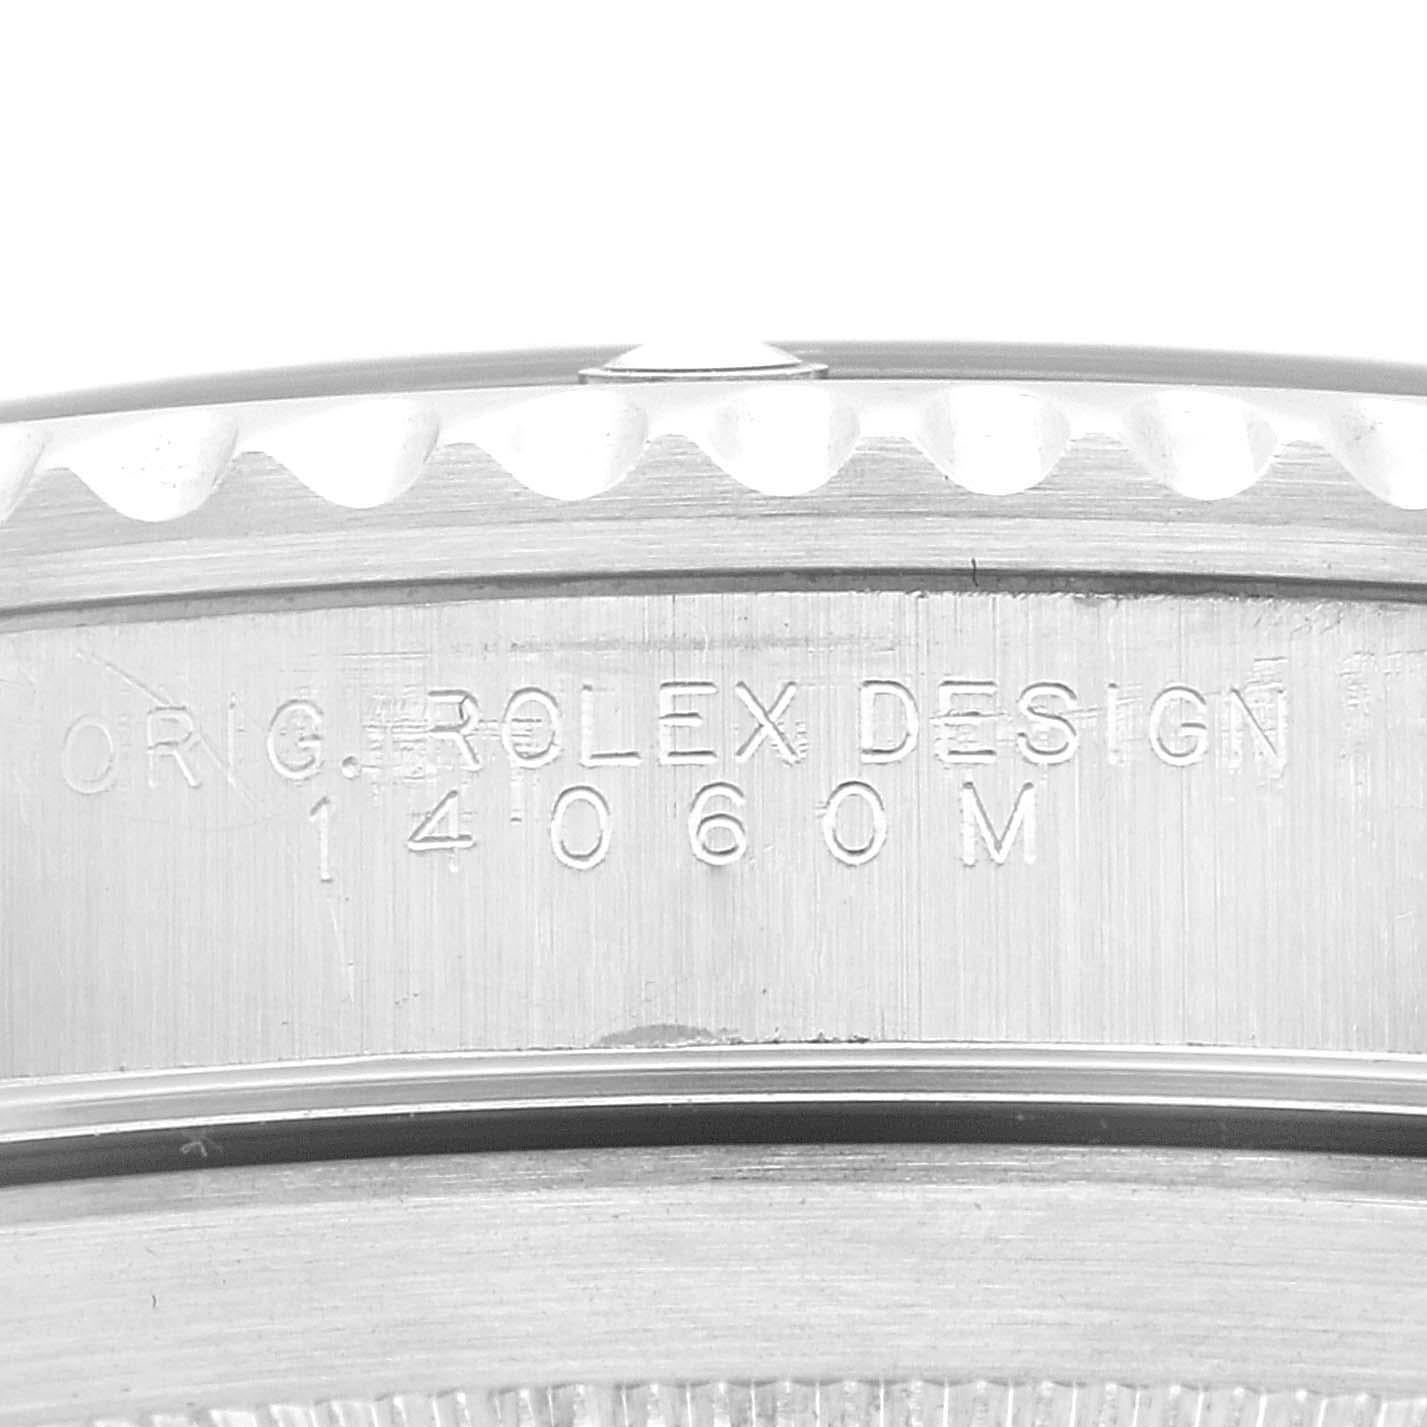 Rolex Submariner No Date 40mm 2 Liner Steel Mens Watch 14060 Box Papers. Mouvement automatique à remontage automatique, officiellement certifié chronomètre. Boîtier en acier inoxydable de 40.0 mm de diamètre. Logo Rolex sur la couronne. Lunette